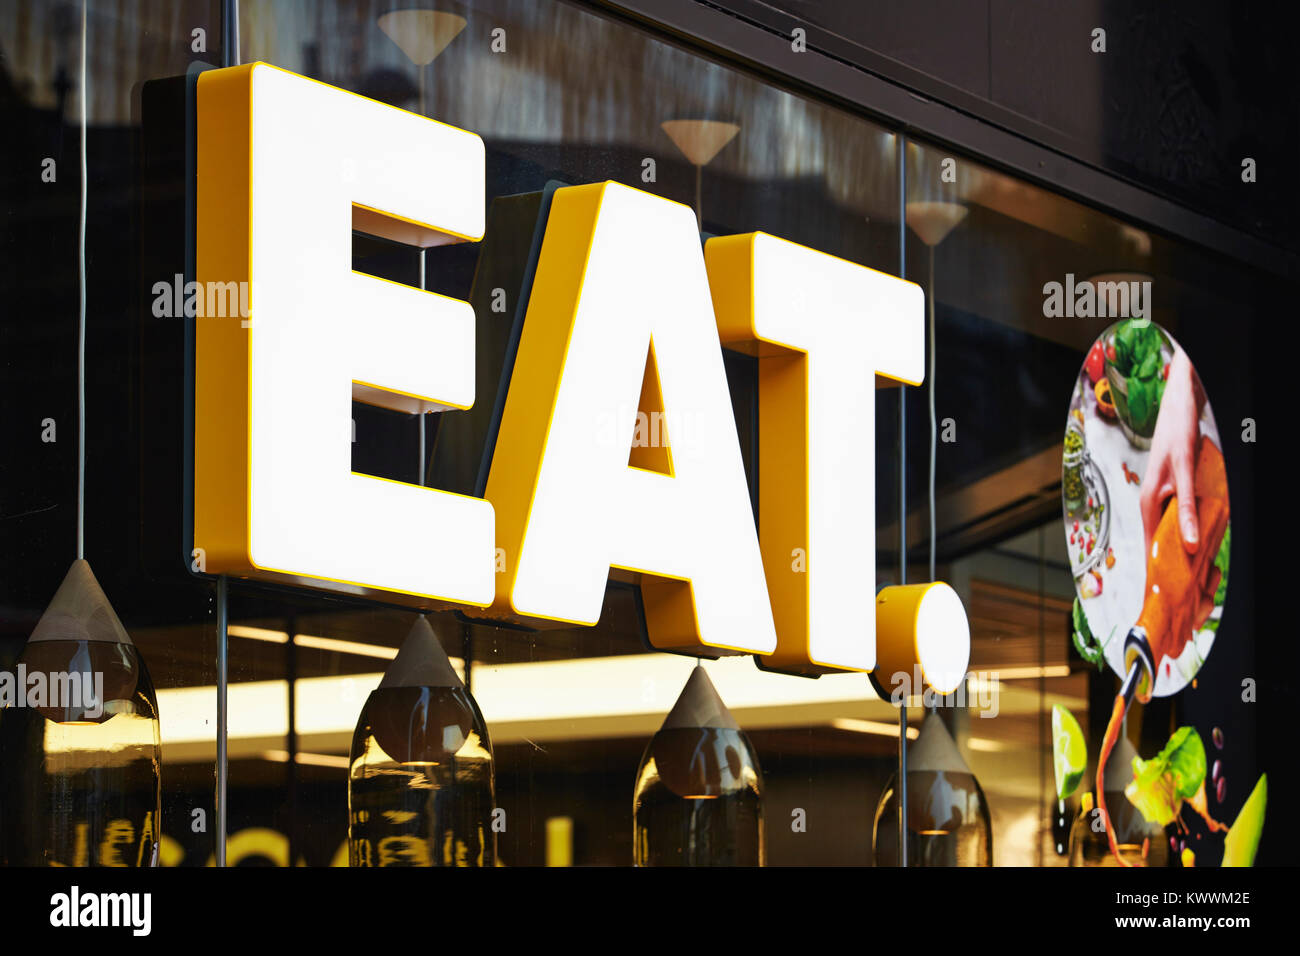 EAT restaurant signage, Ealing Broadway shopping centre, London, England, UK Stock Photo